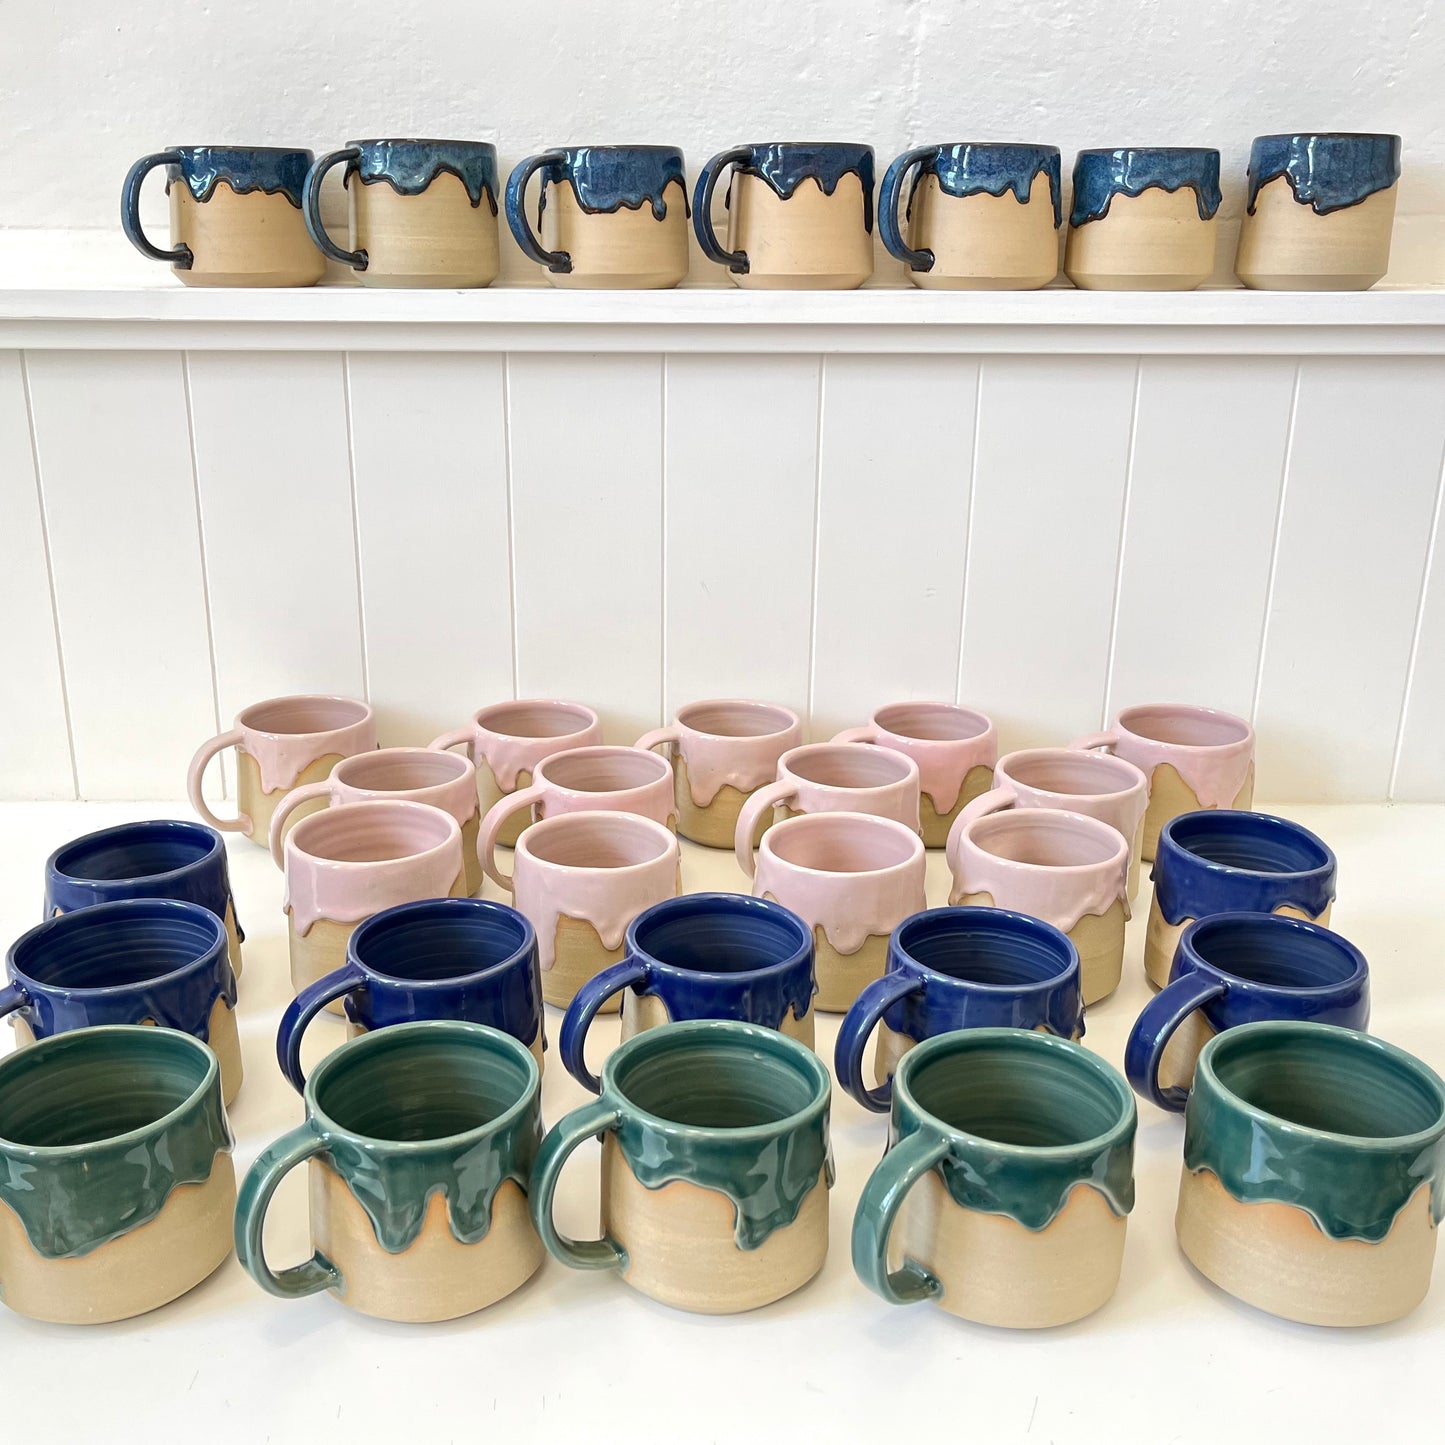 Ceramic "Drippy" Mug - Choc Navy